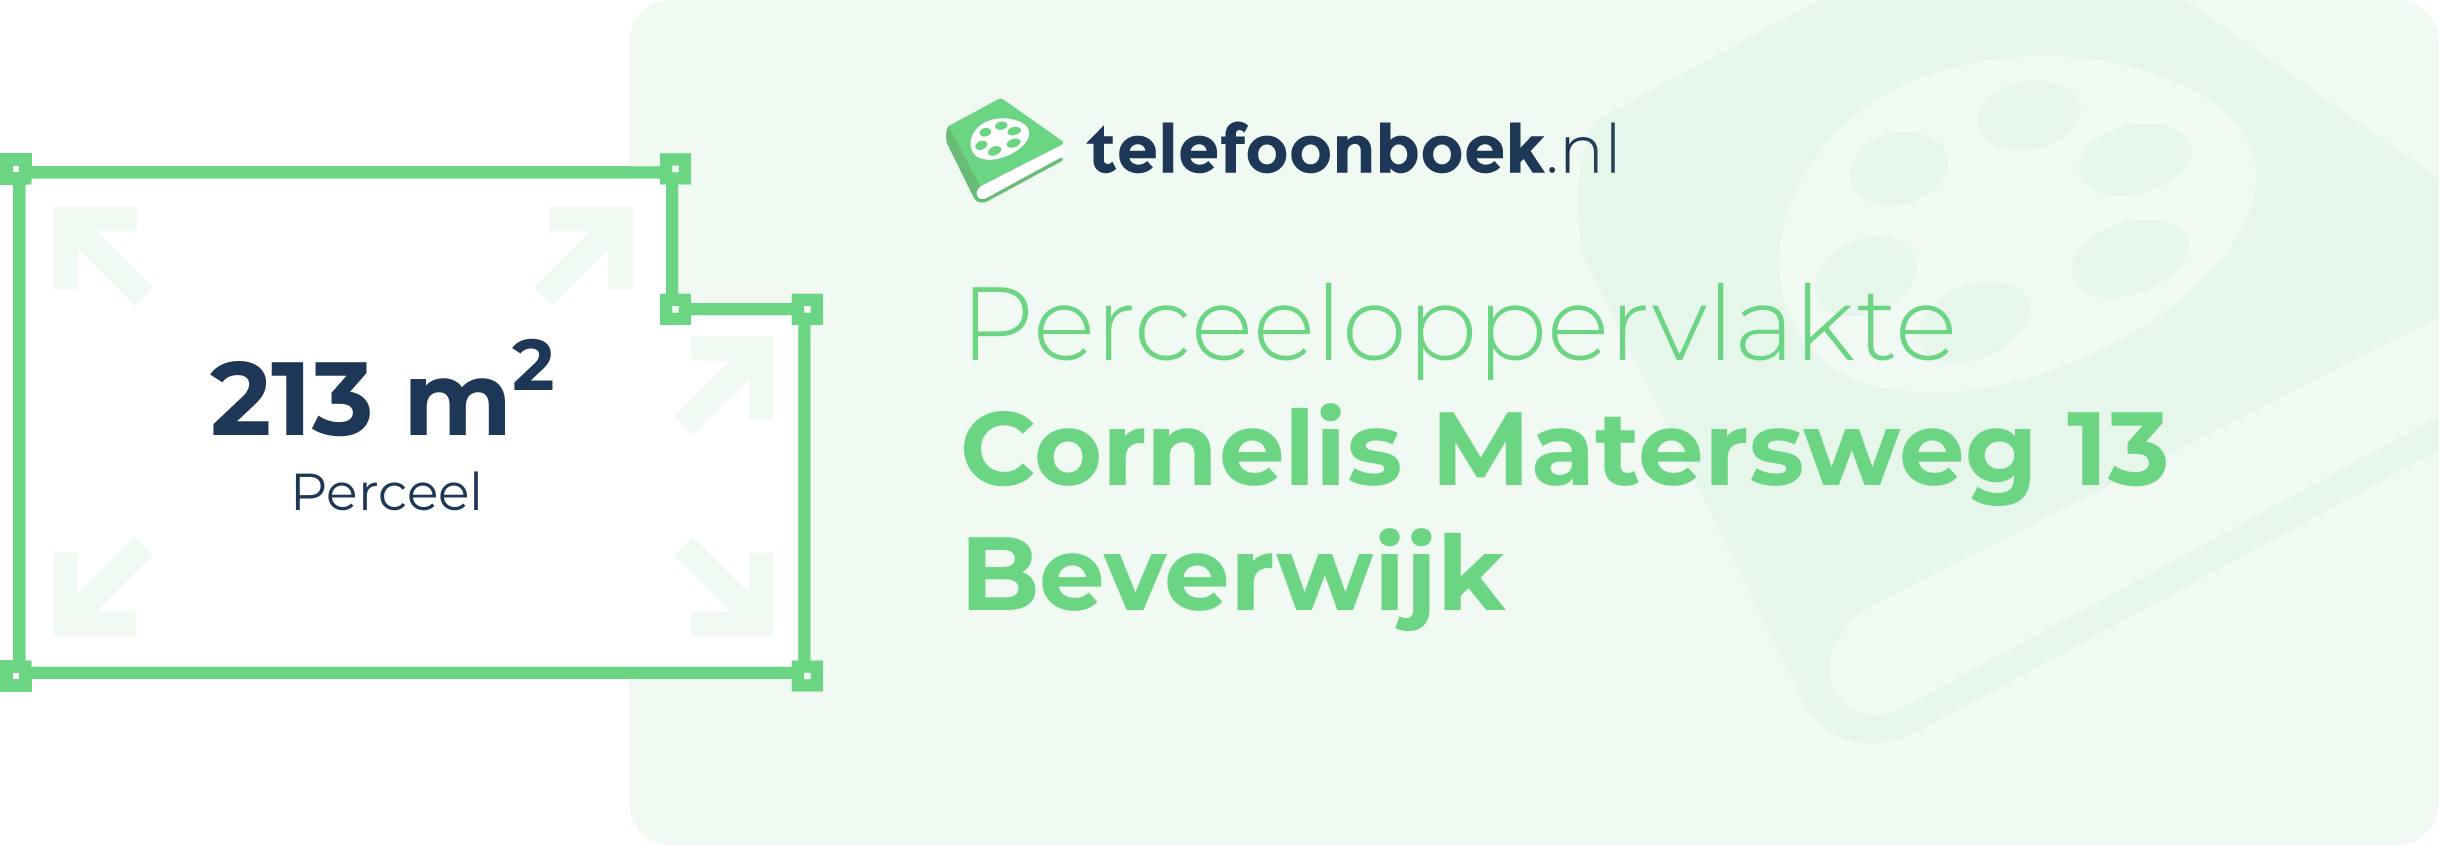 Perceeloppervlakte Cornelis Matersweg 13 Beverwijk